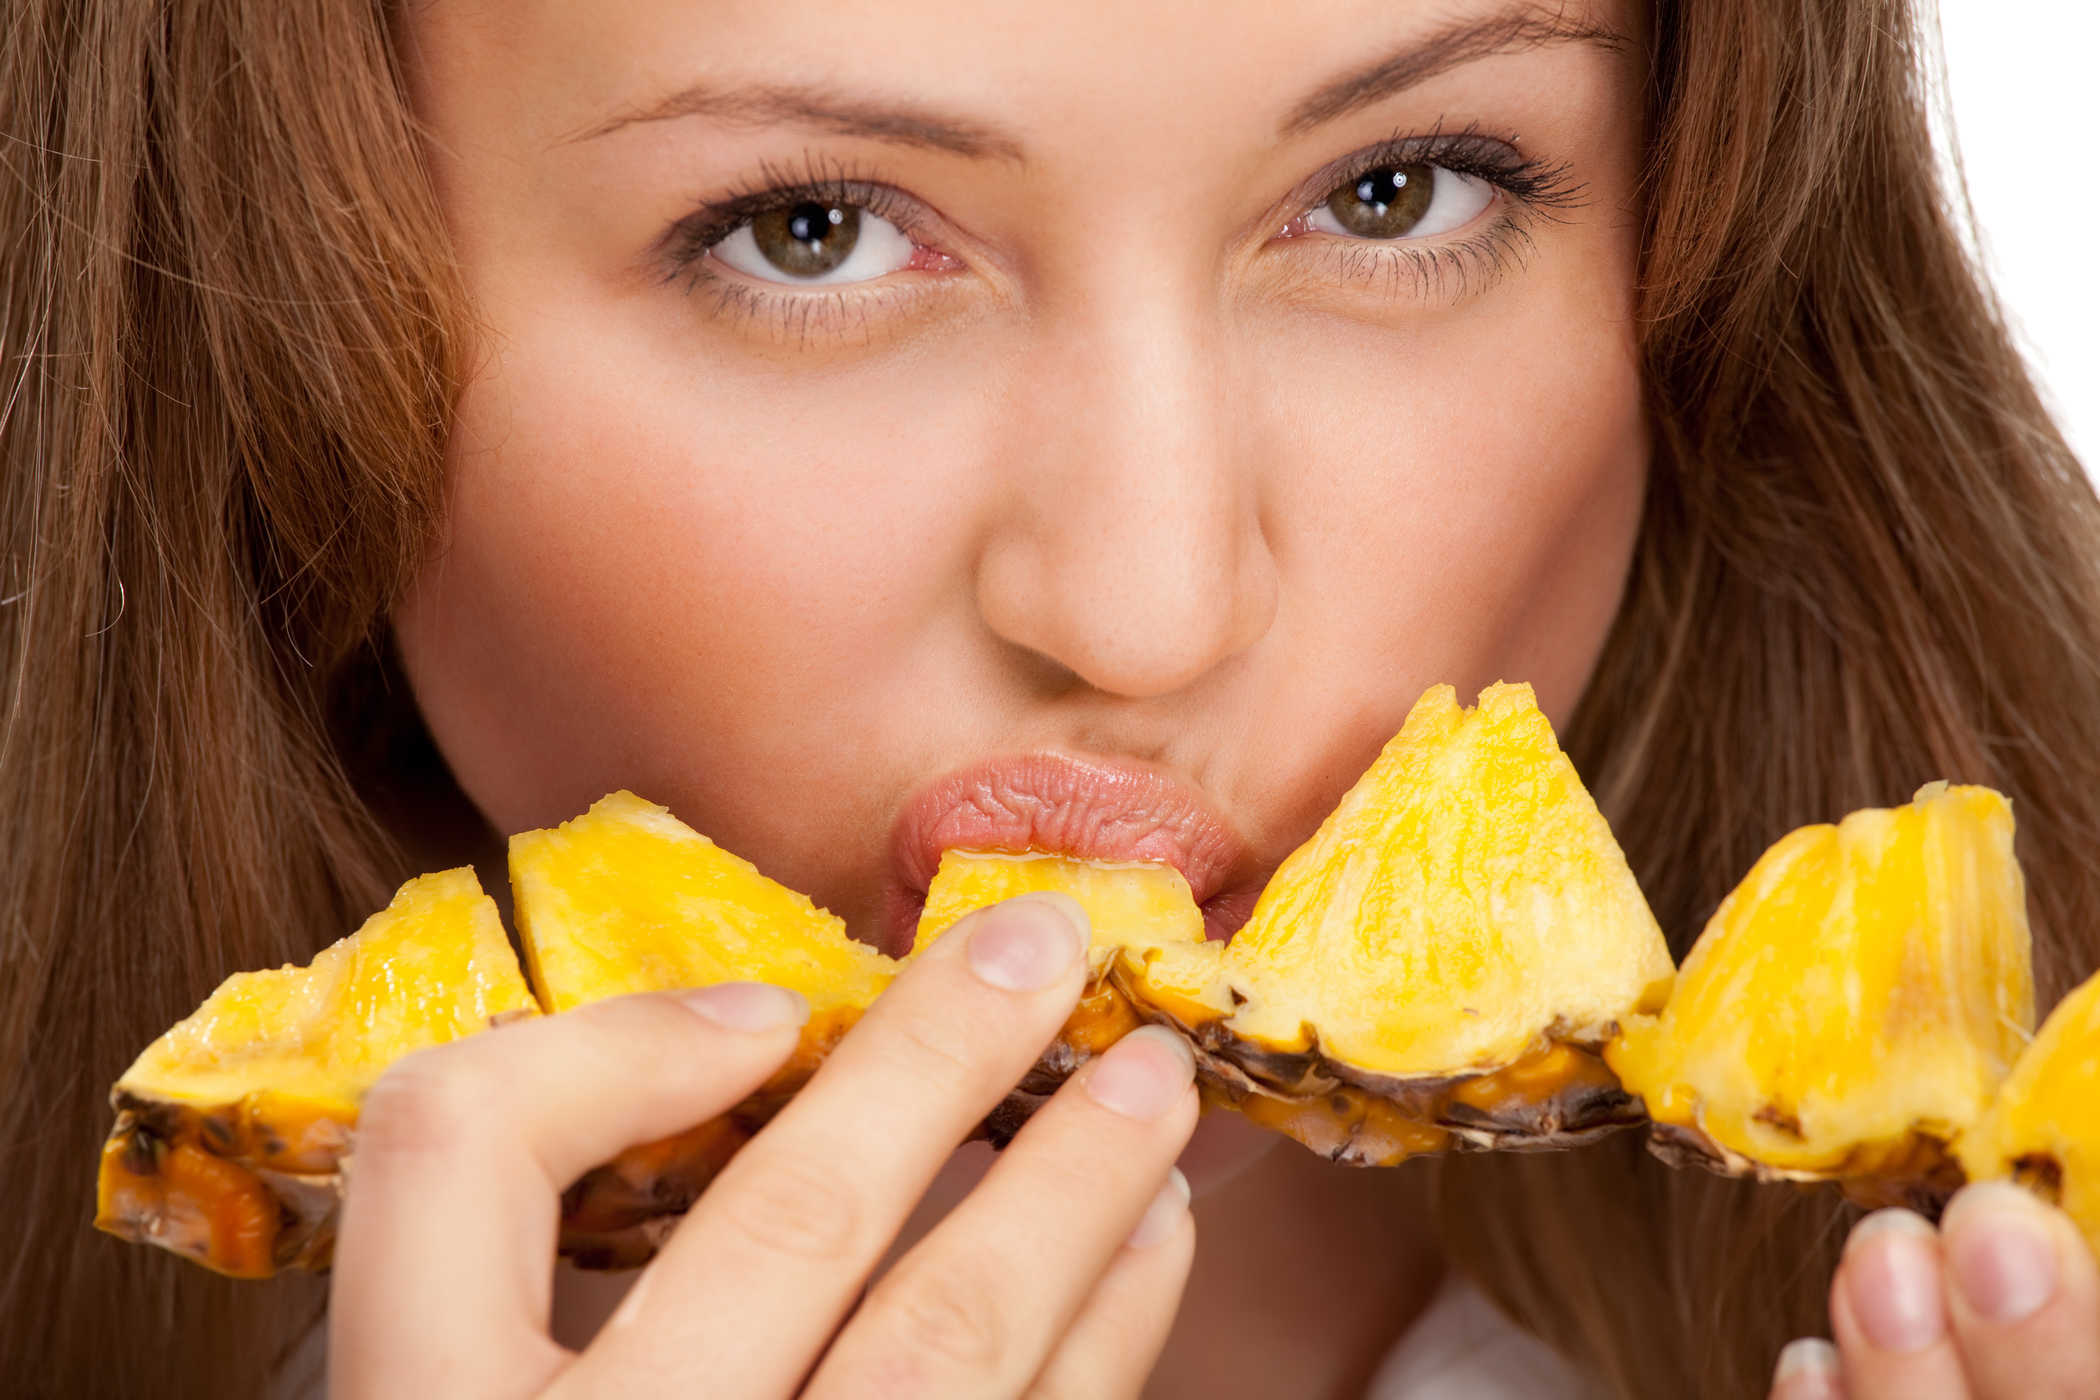 Čini li vašu vaginu tako slatkom jedenjem ananasa?